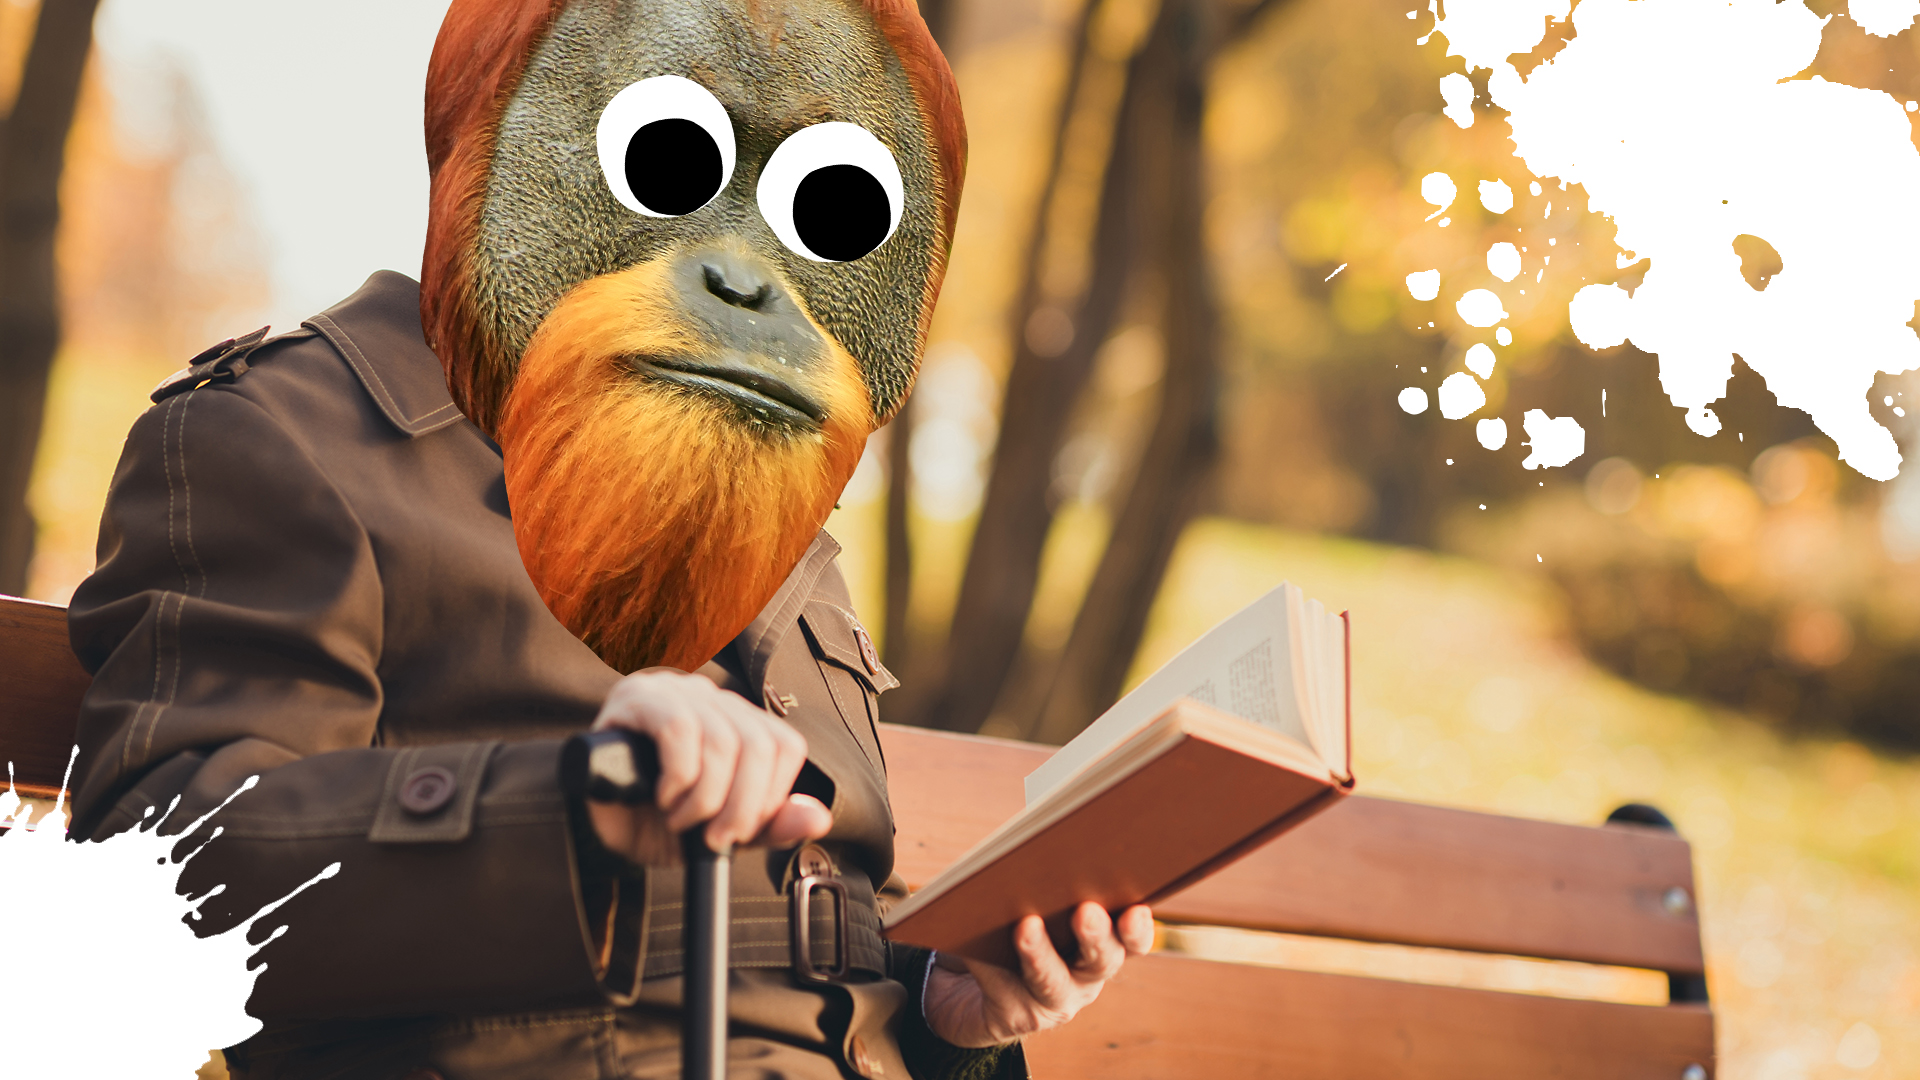 An orangutan reads a book on a park bench